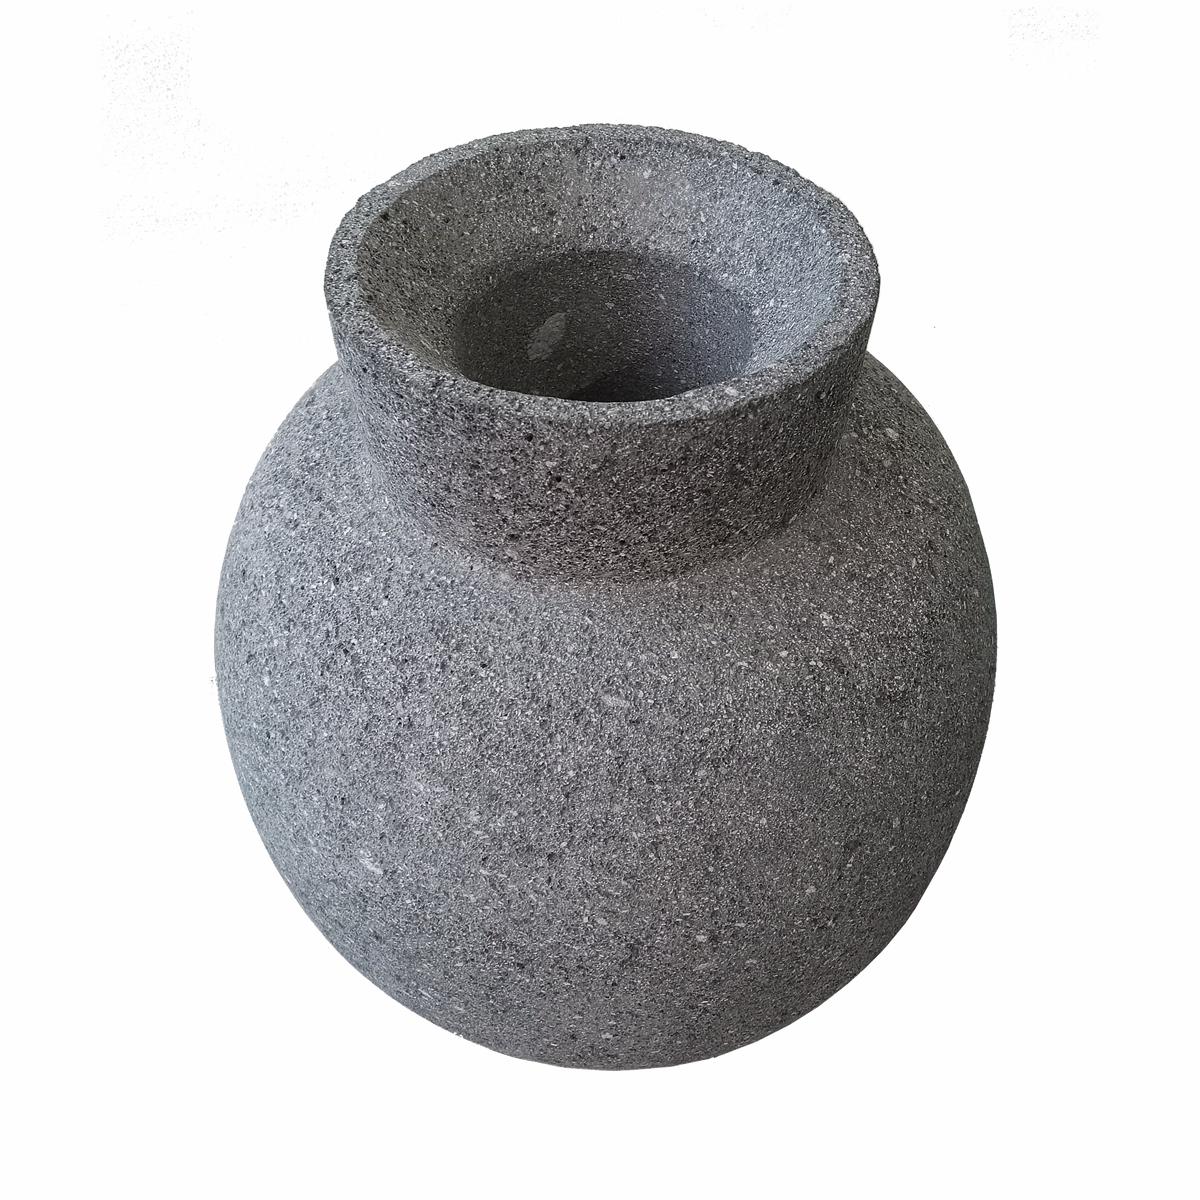 Vase ou jarre en pierre de lave sombre, de forme ovale et au sommet étroit, fabriqué à la main au Mexique. Un accent moderne et organique pour la décoration de la maison, dans la cuisine, le salon ou tout autre endroit, à l'intérieur ou à